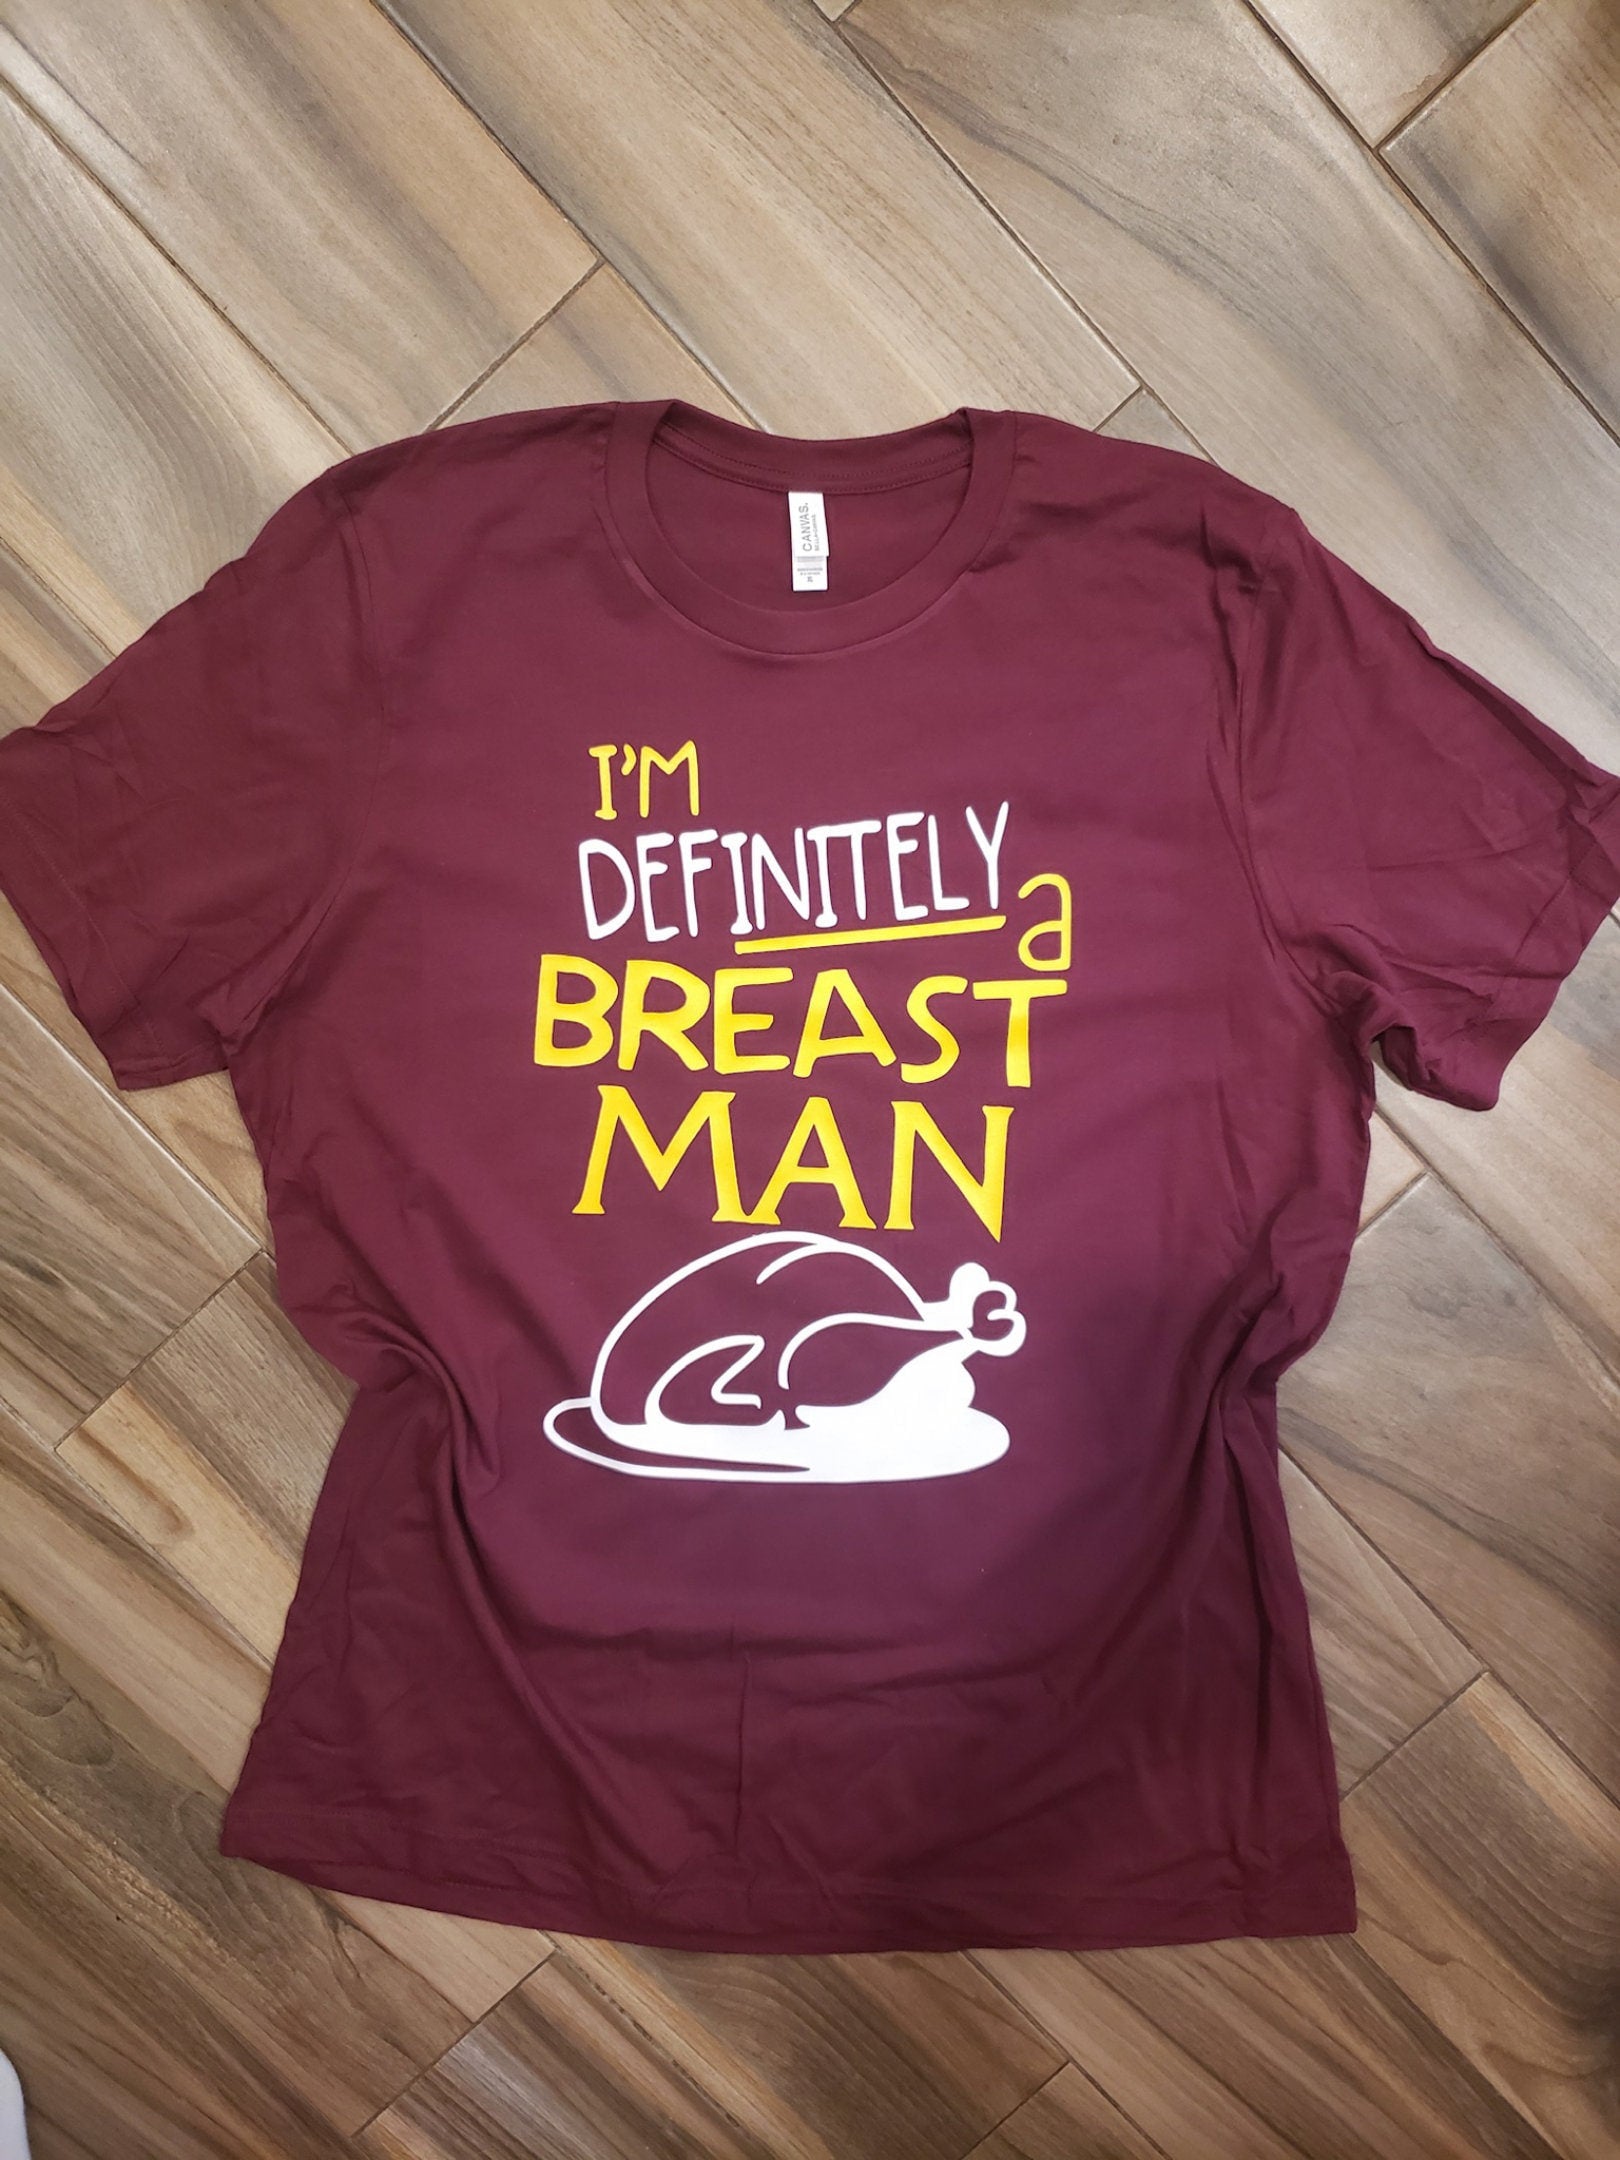 Definitely a Breast Man Shirt